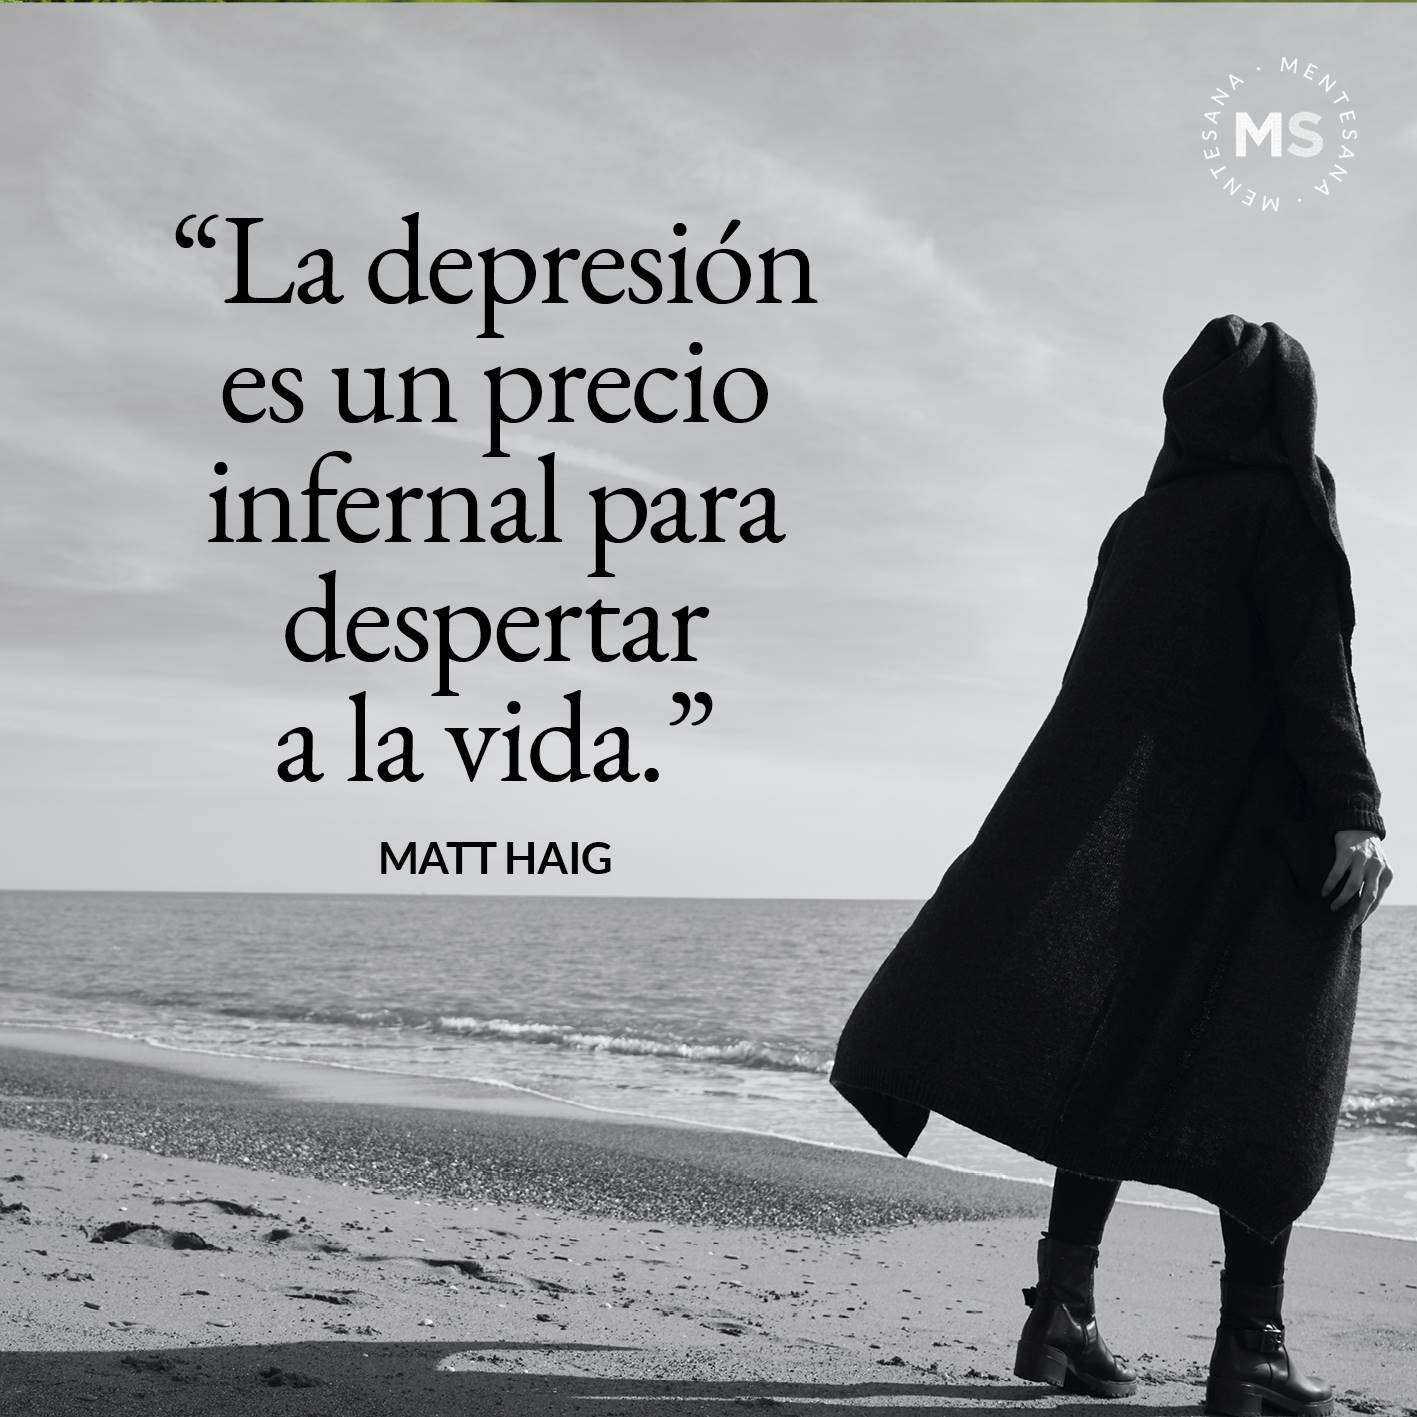 FRASES DIA DE LA DEPRESION. "La depresión es un precio infernal para despertar a la vida.” Matt Haig